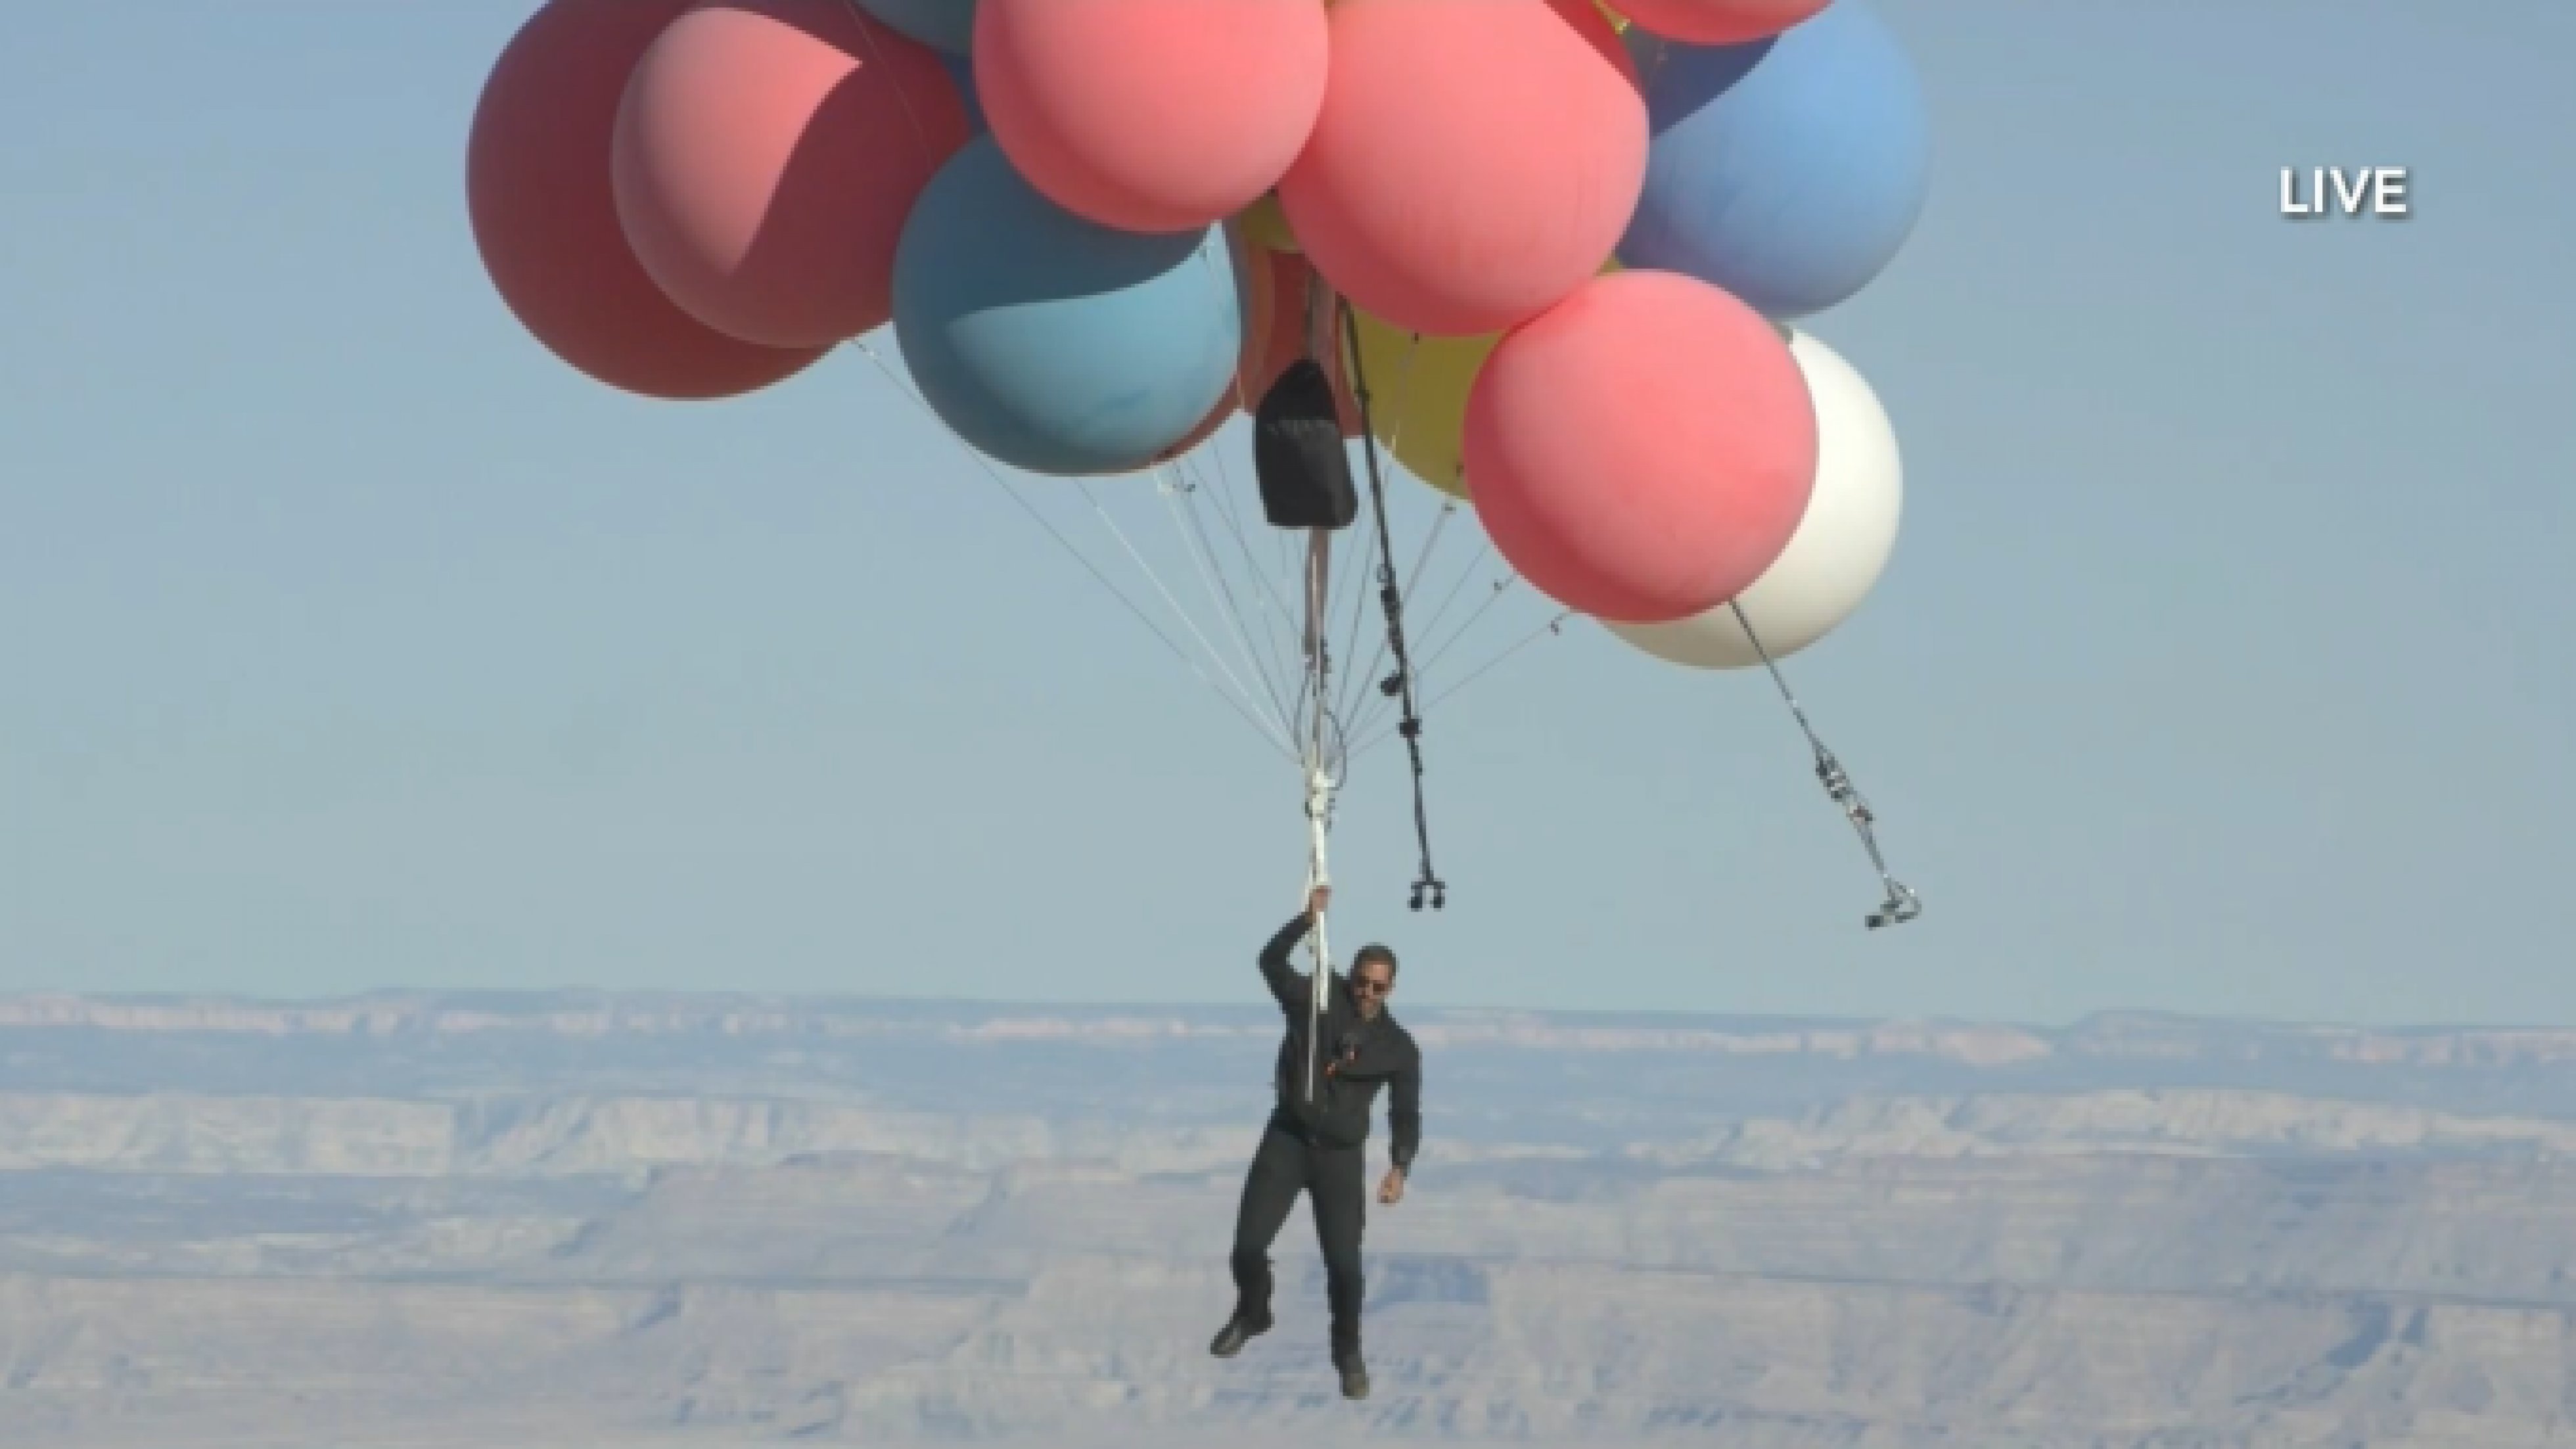 Что будет происходить с воздушным шаром. Дэвид Блейн на воздушных шарах. Человек с воздушным шариком. Большой воздушный шар.